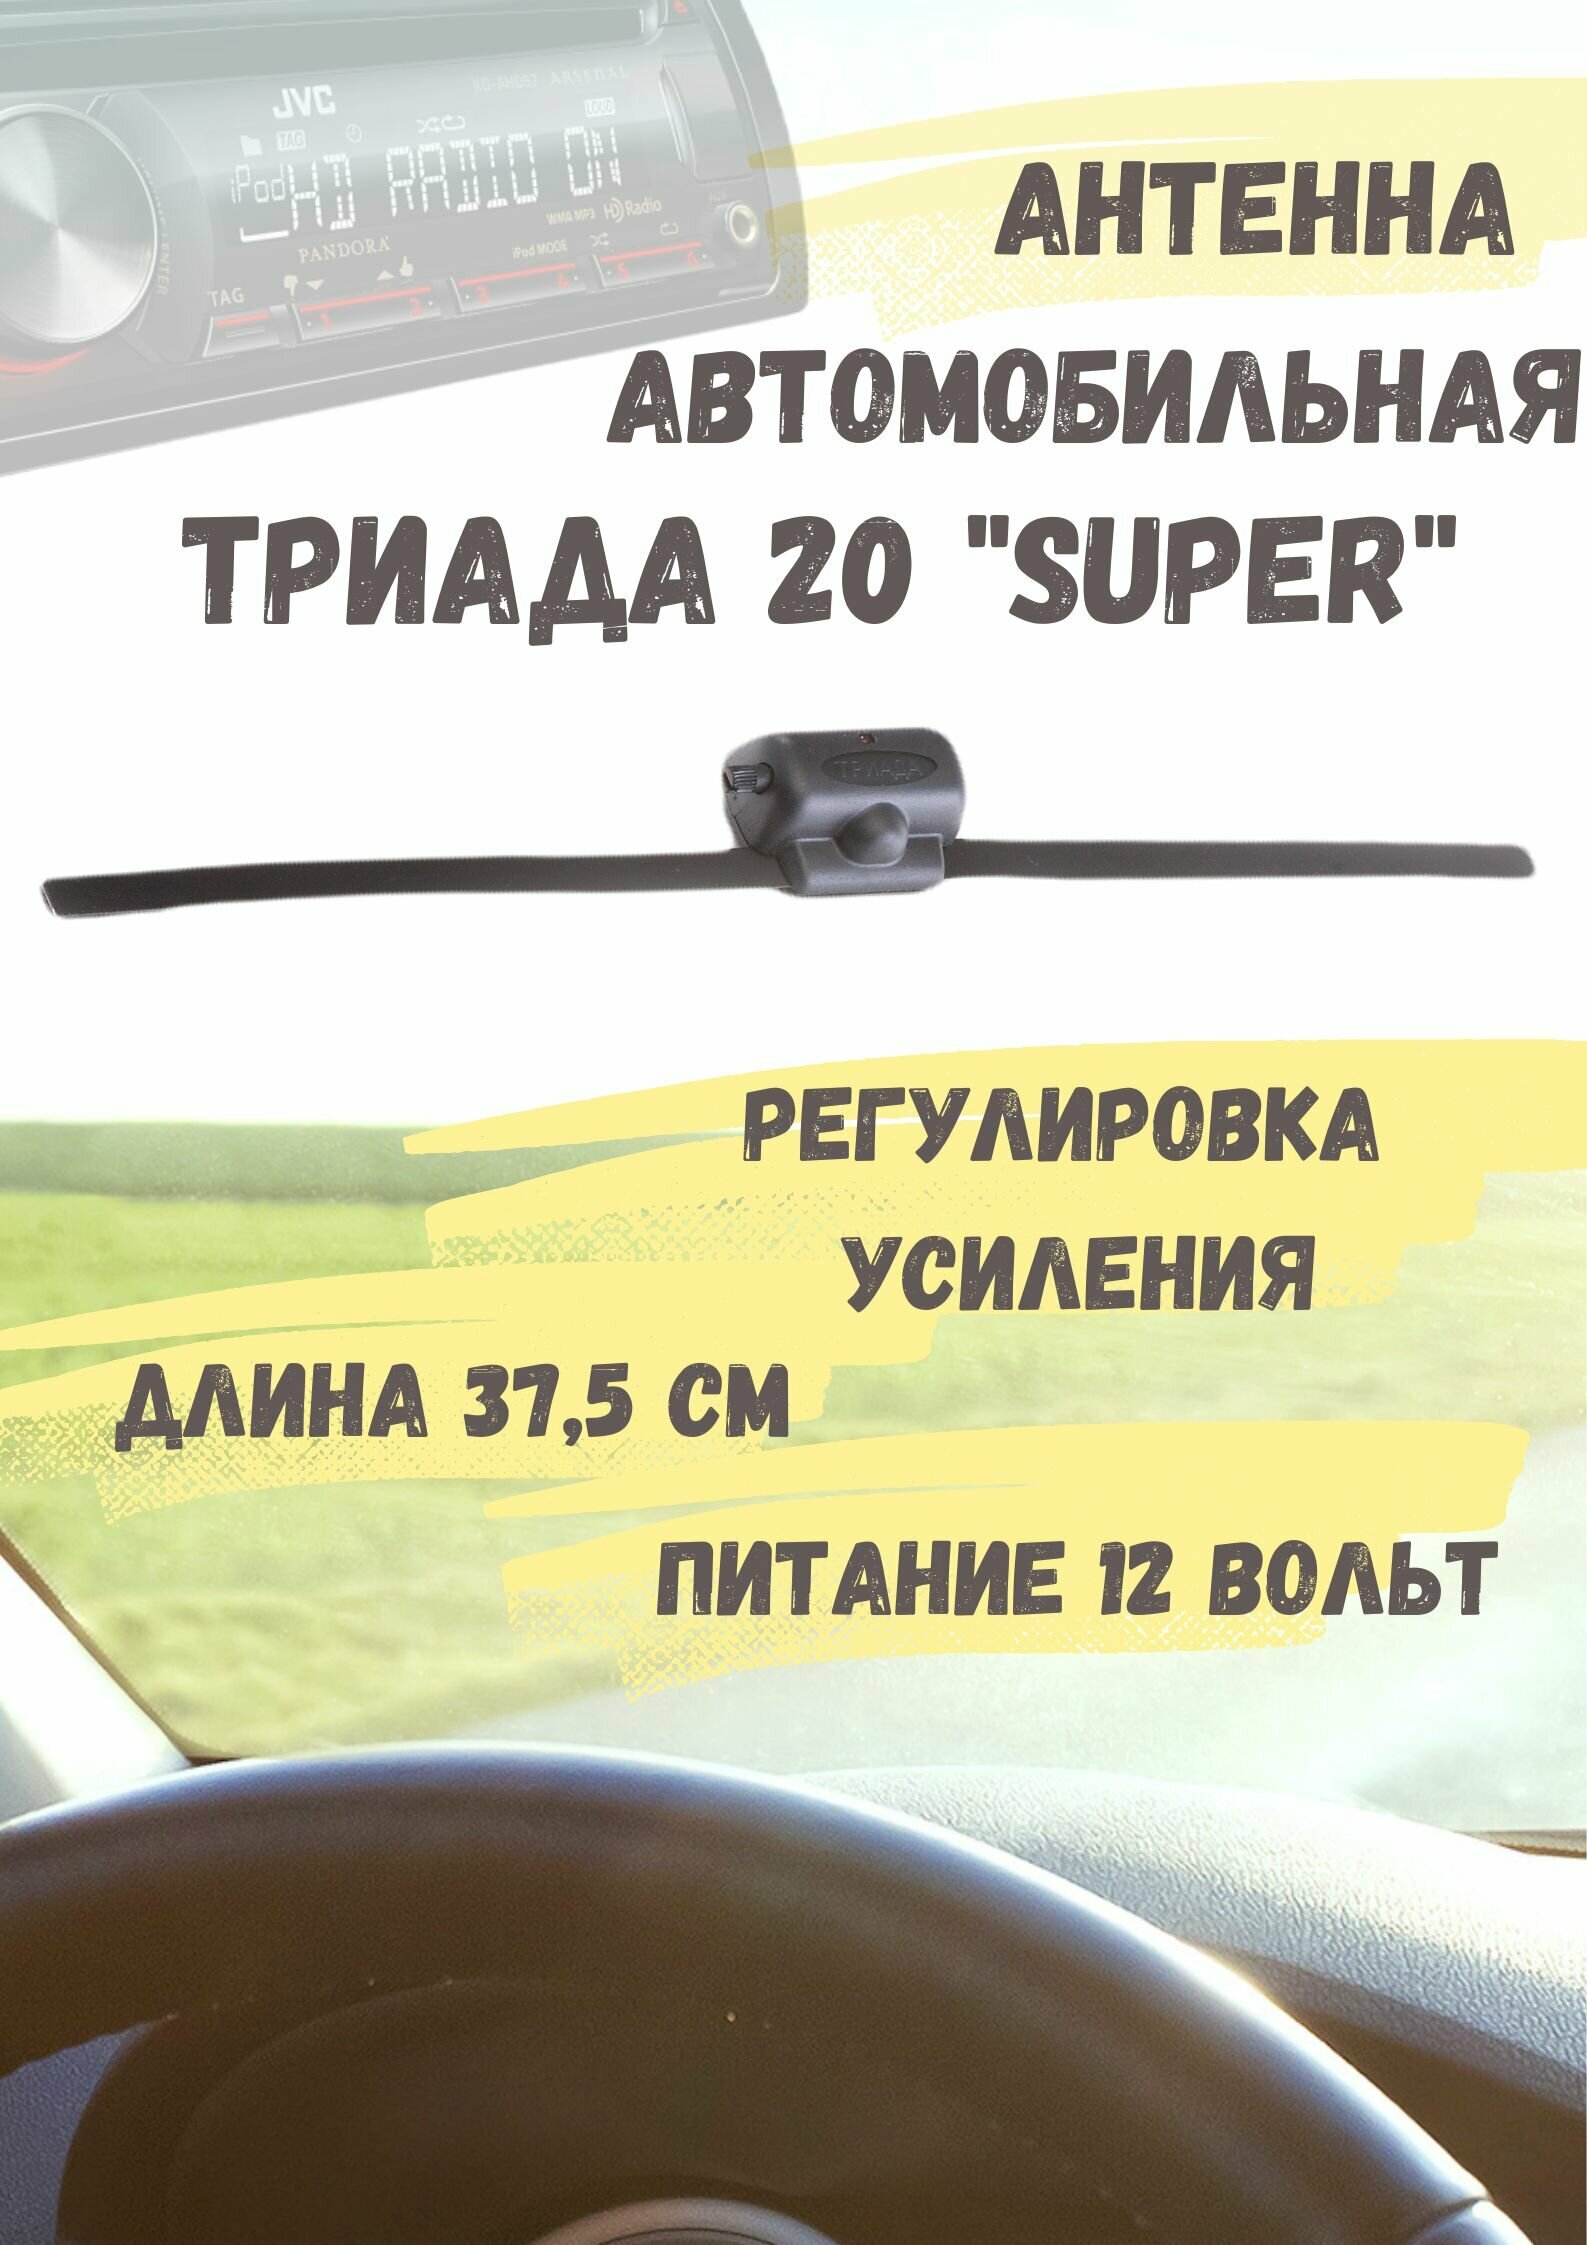 Активная автомобильная радиоантенна Триада "20 Super" всеволновая с регулировкой усиления